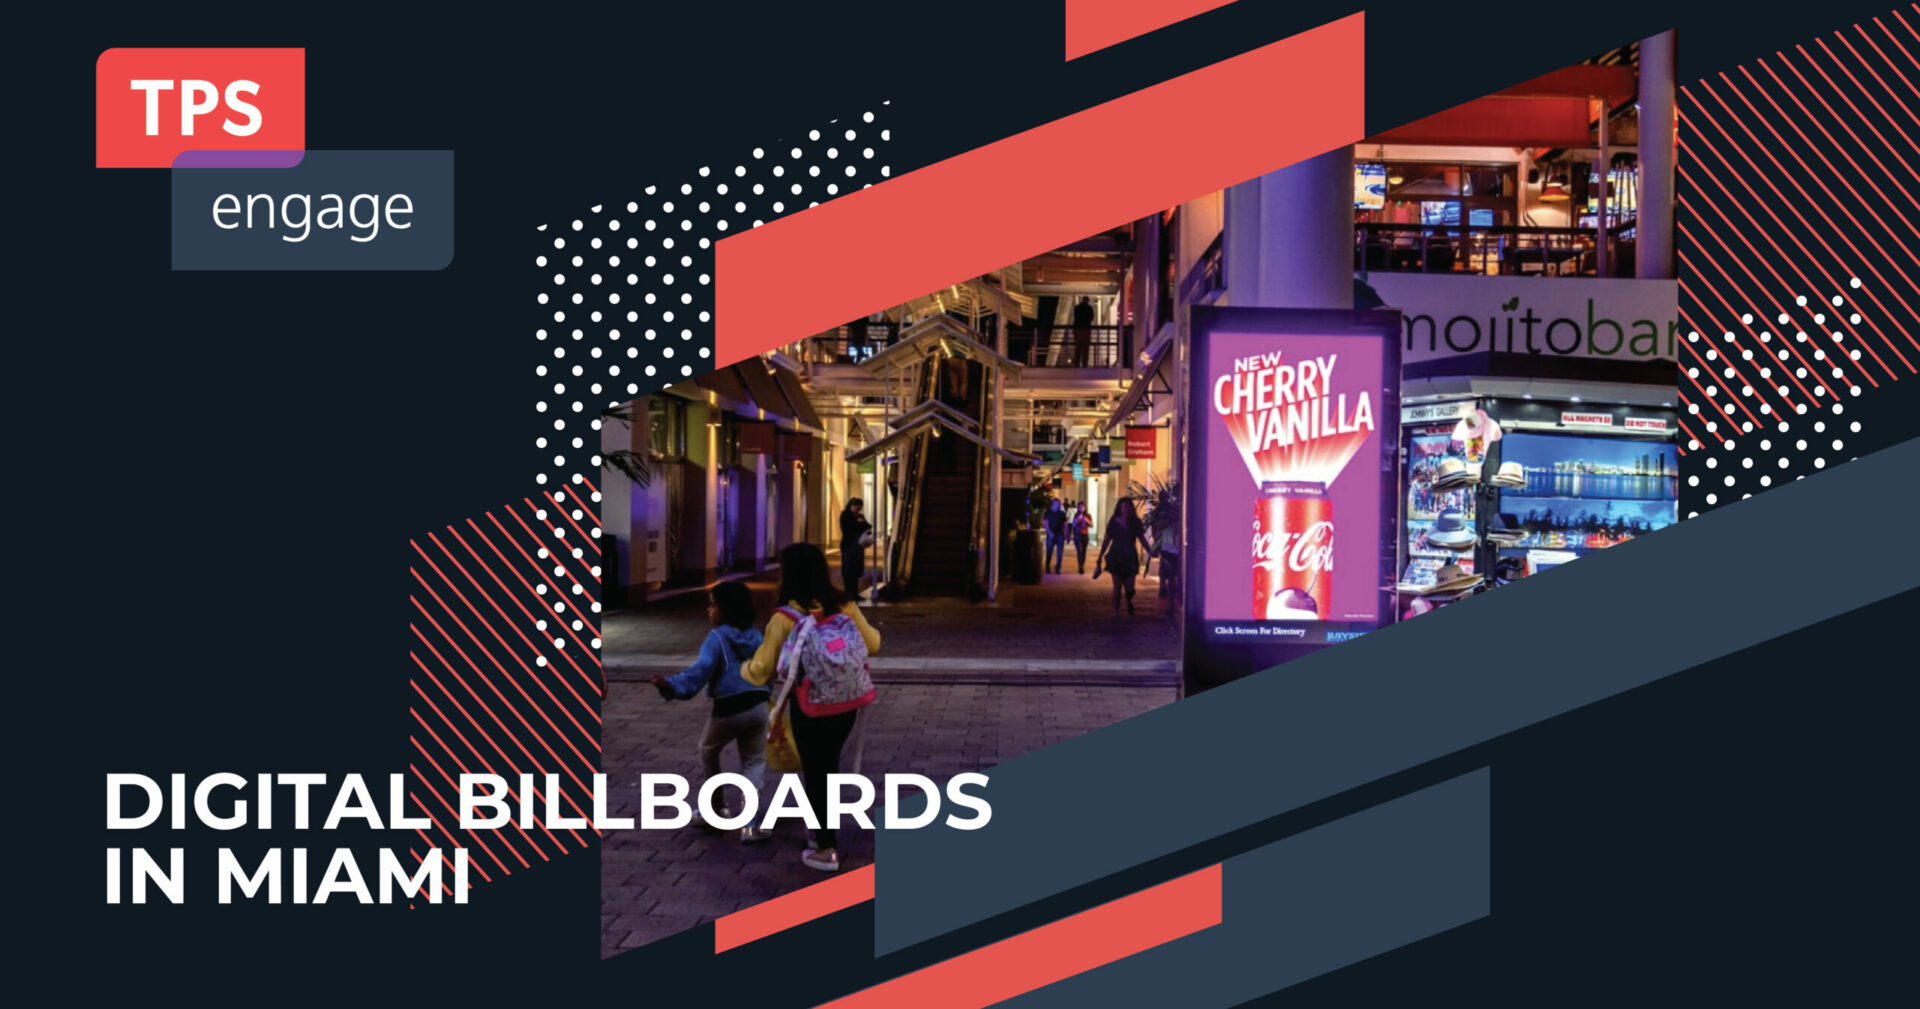 Digital billboards in Miami cover